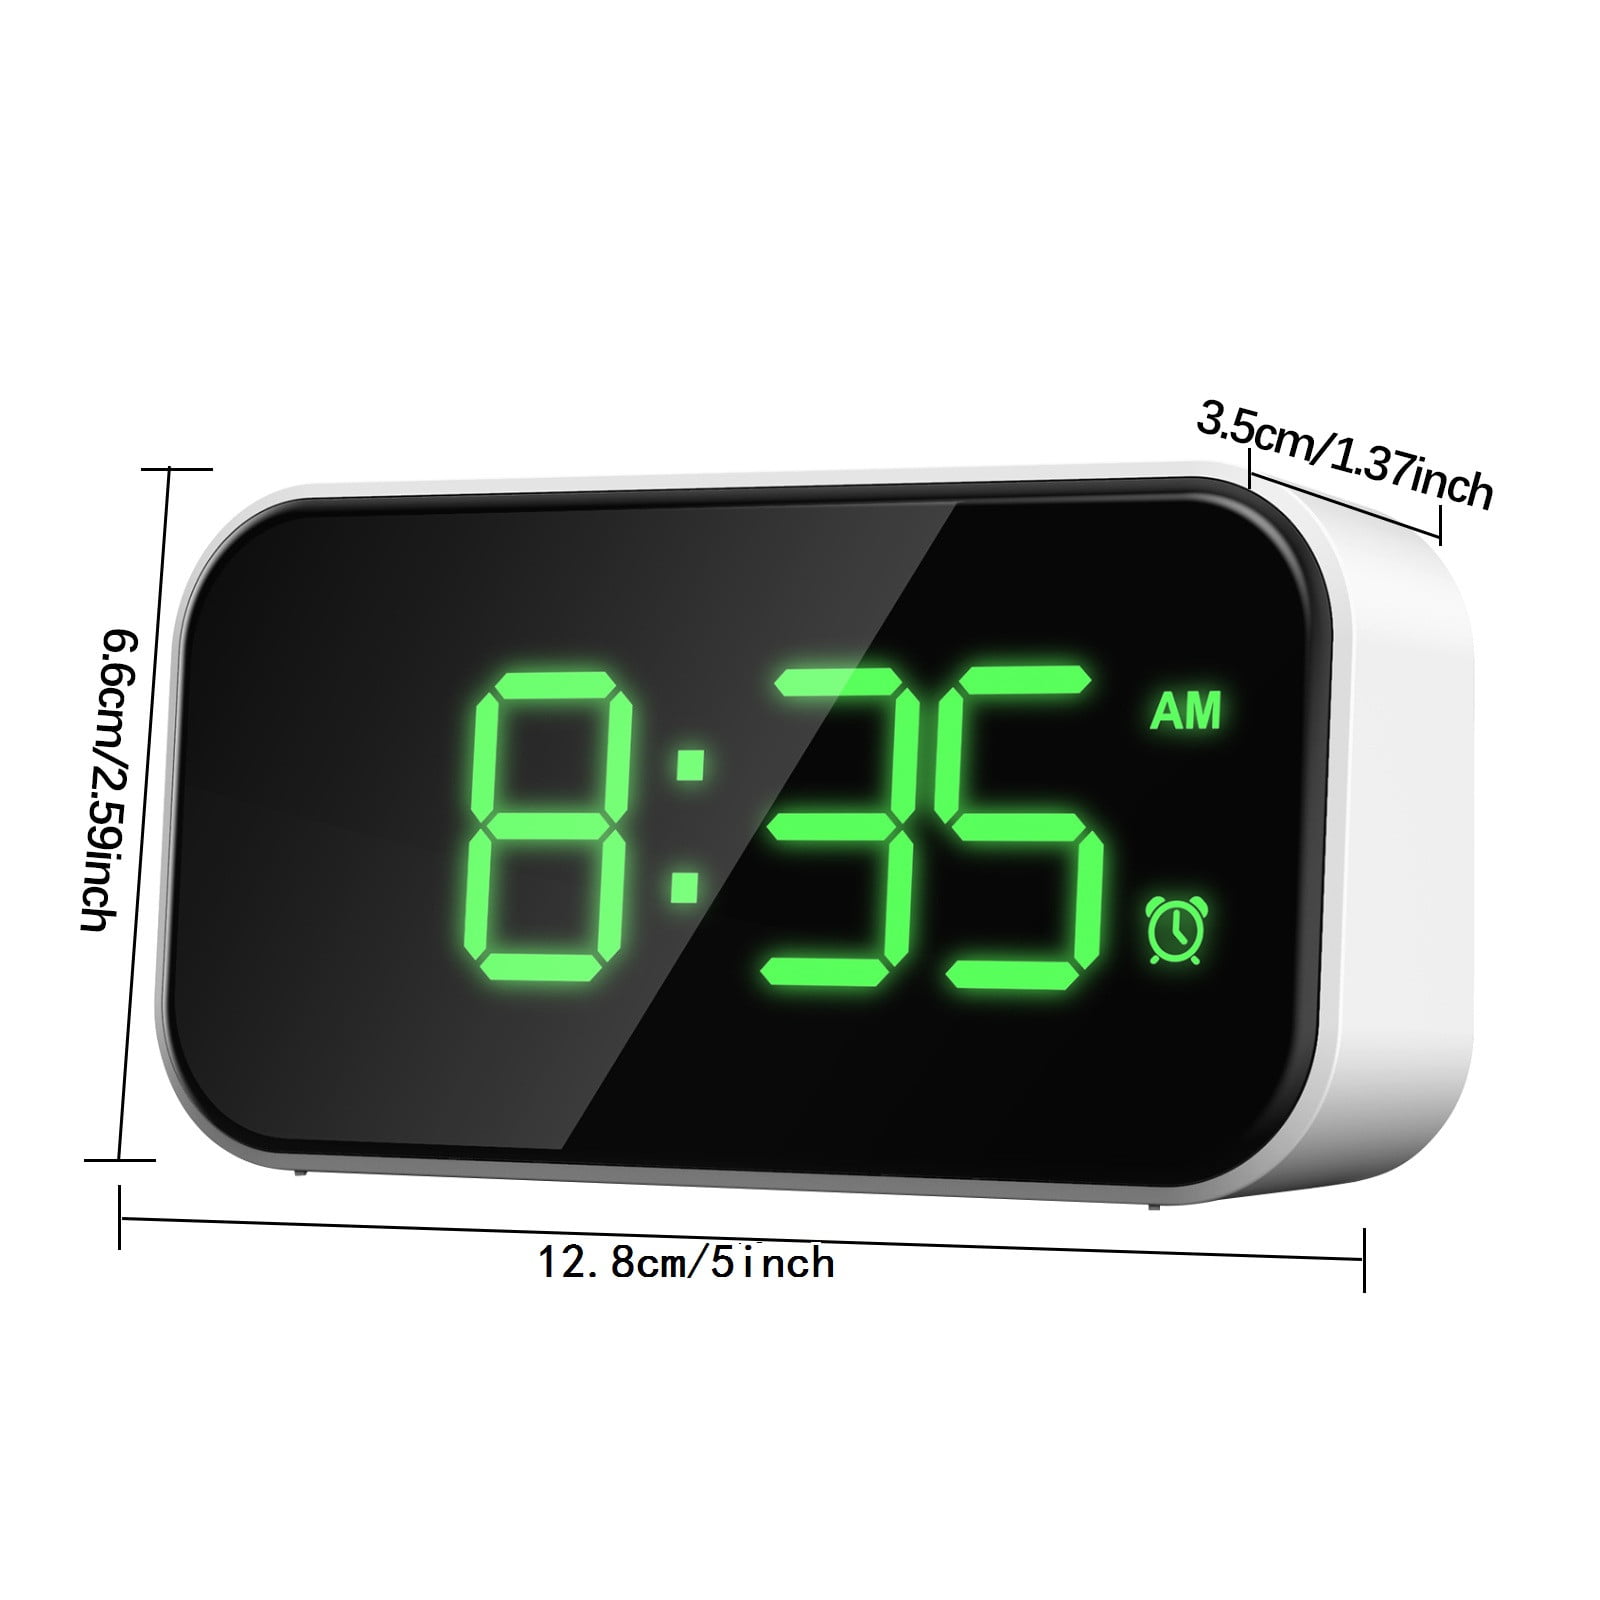 ved siden af Flytte kontrast Small LED Digital Alarm Clock with Snooze, Easy to Set, Full Range  Brightness digital clock battery operated - Walmart.com